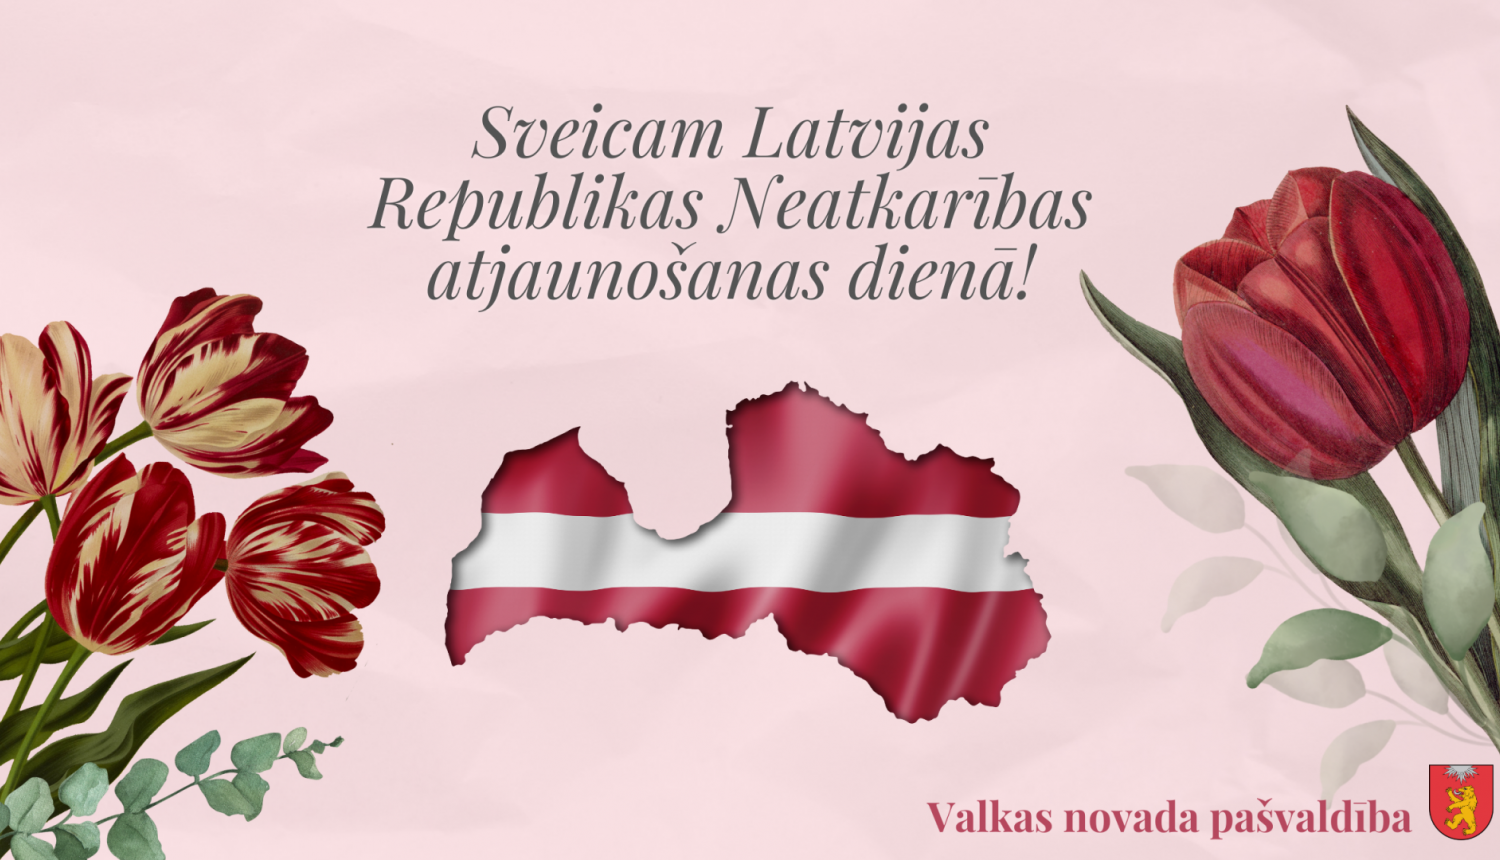 Sveiciens Latvijas Republikas Neatkarības atjaunošanas dienā